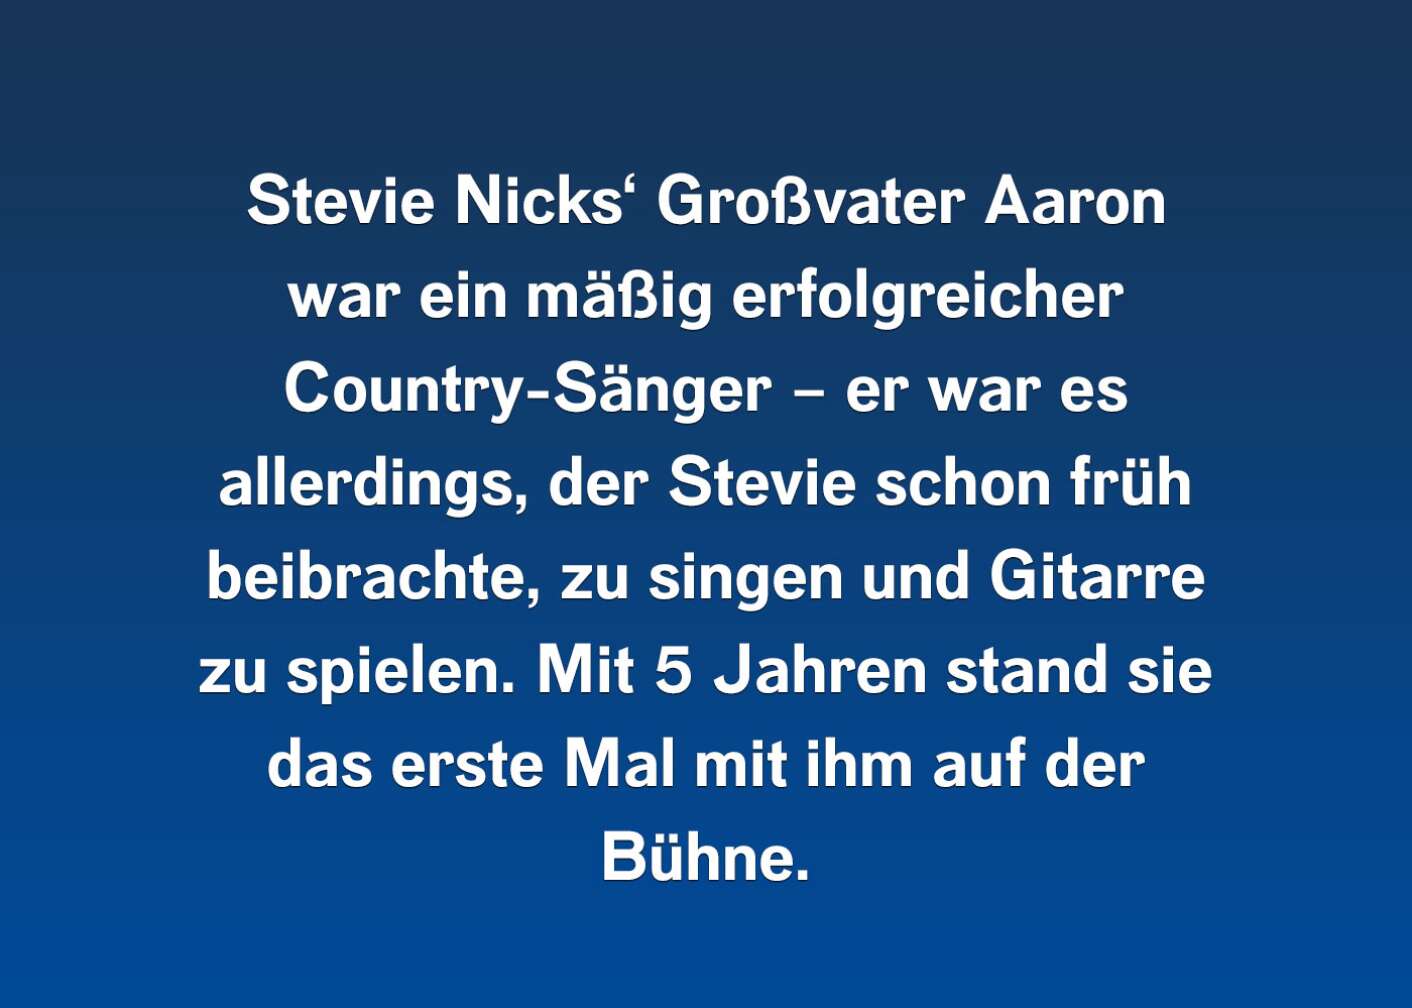 Fakt über Stevie Nicks als Fließtext